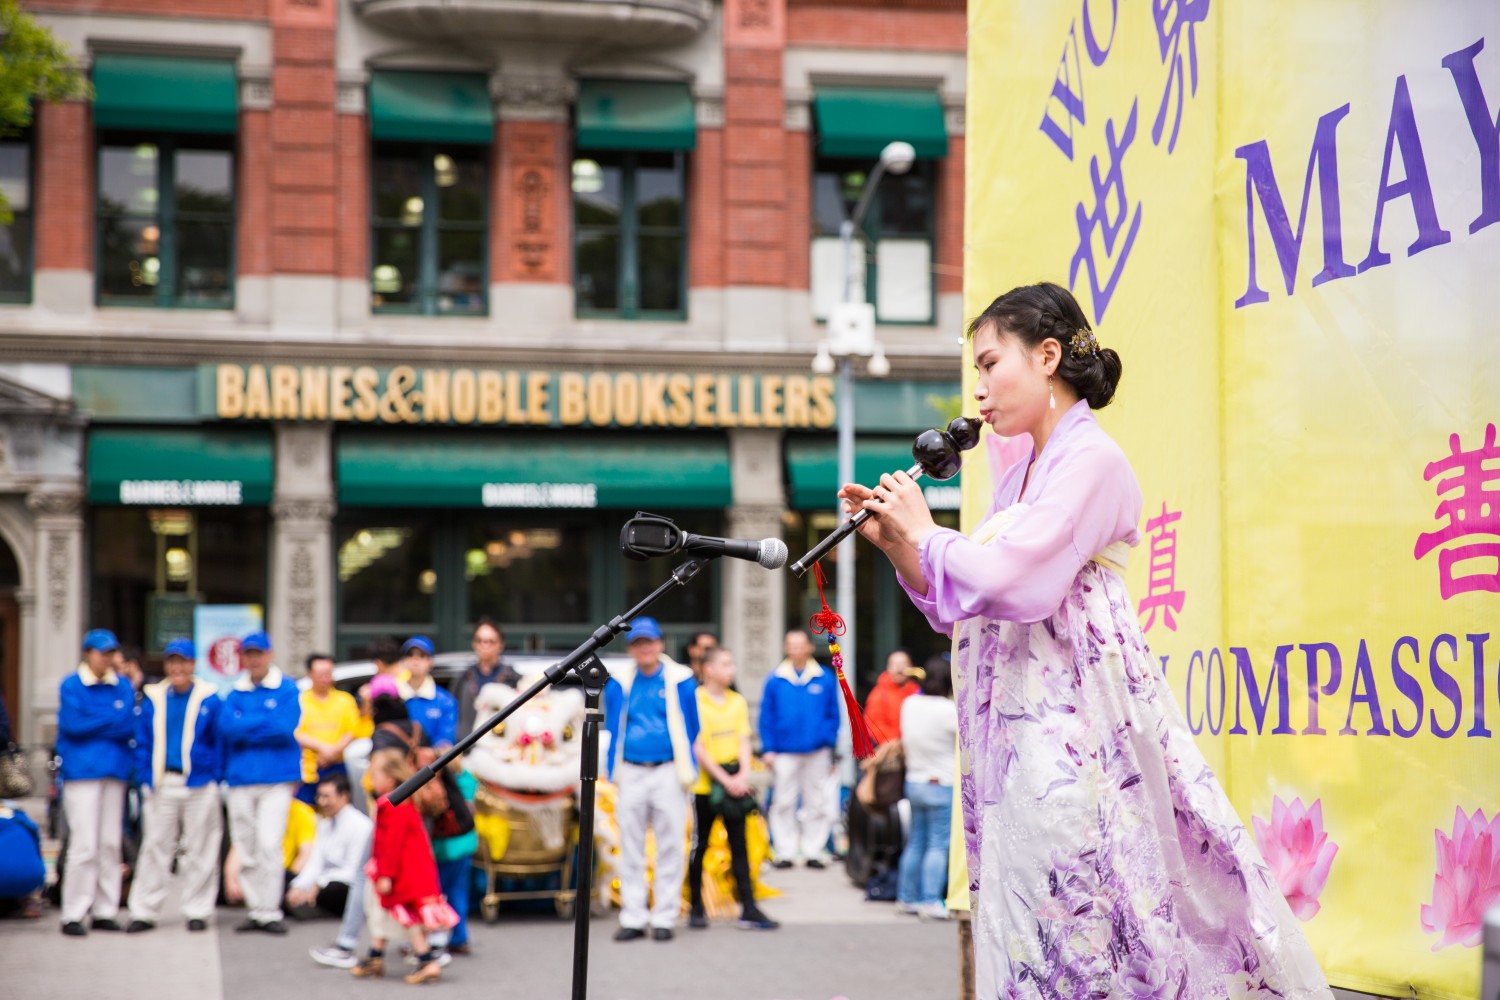 Praticantes do Falun Dafa participam de uma atividade do Dia Mundial de Falun Dafa na Union Square, Nova York (Samira Bouaou / The Epoch Times)